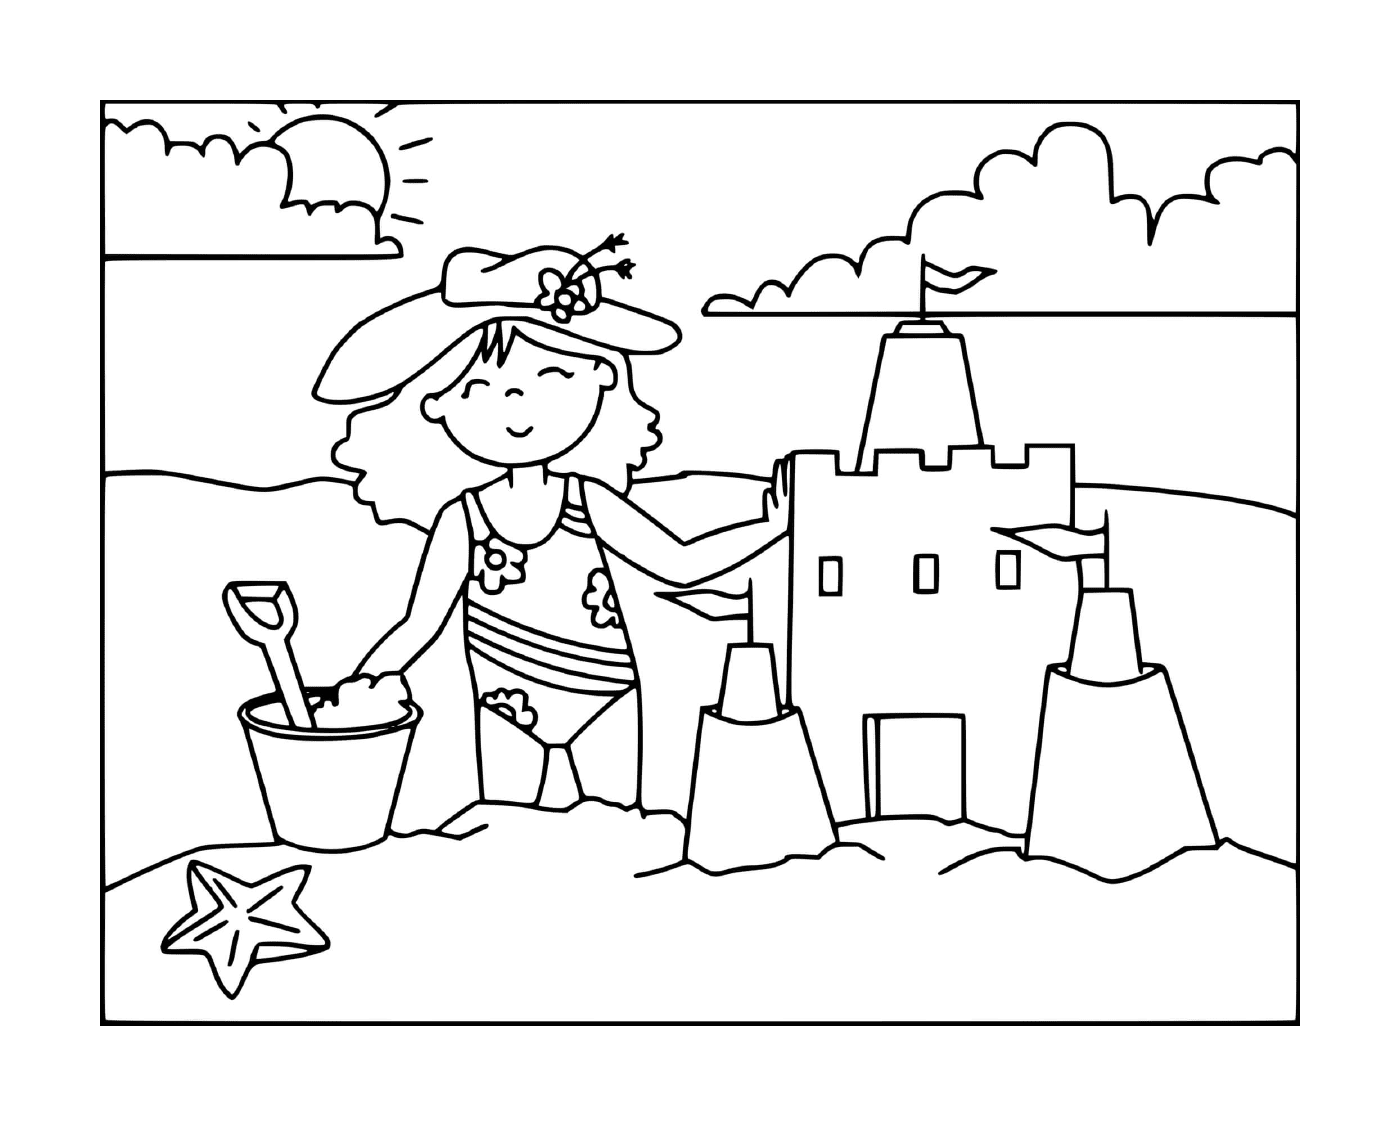  A girl builds a sand castle on the beach 